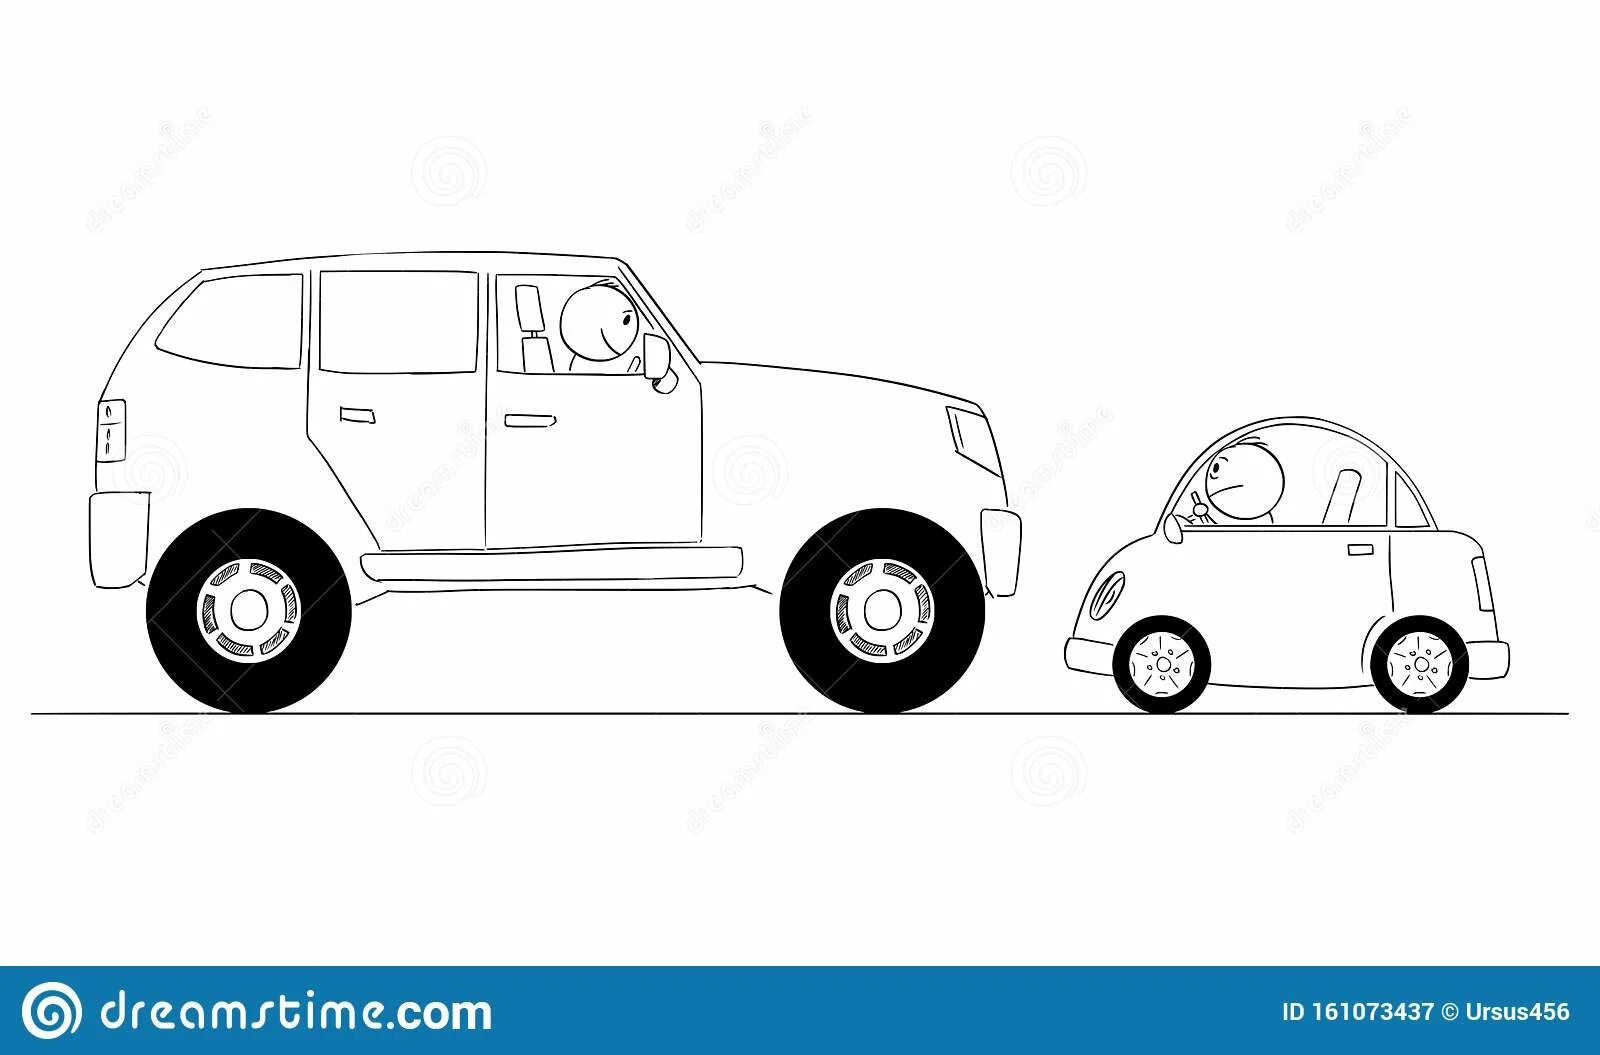 Машина рисунок для детей. Big and small cars. ETK 900 big and small cars. Сидячая машина рисунок. My car is bigger